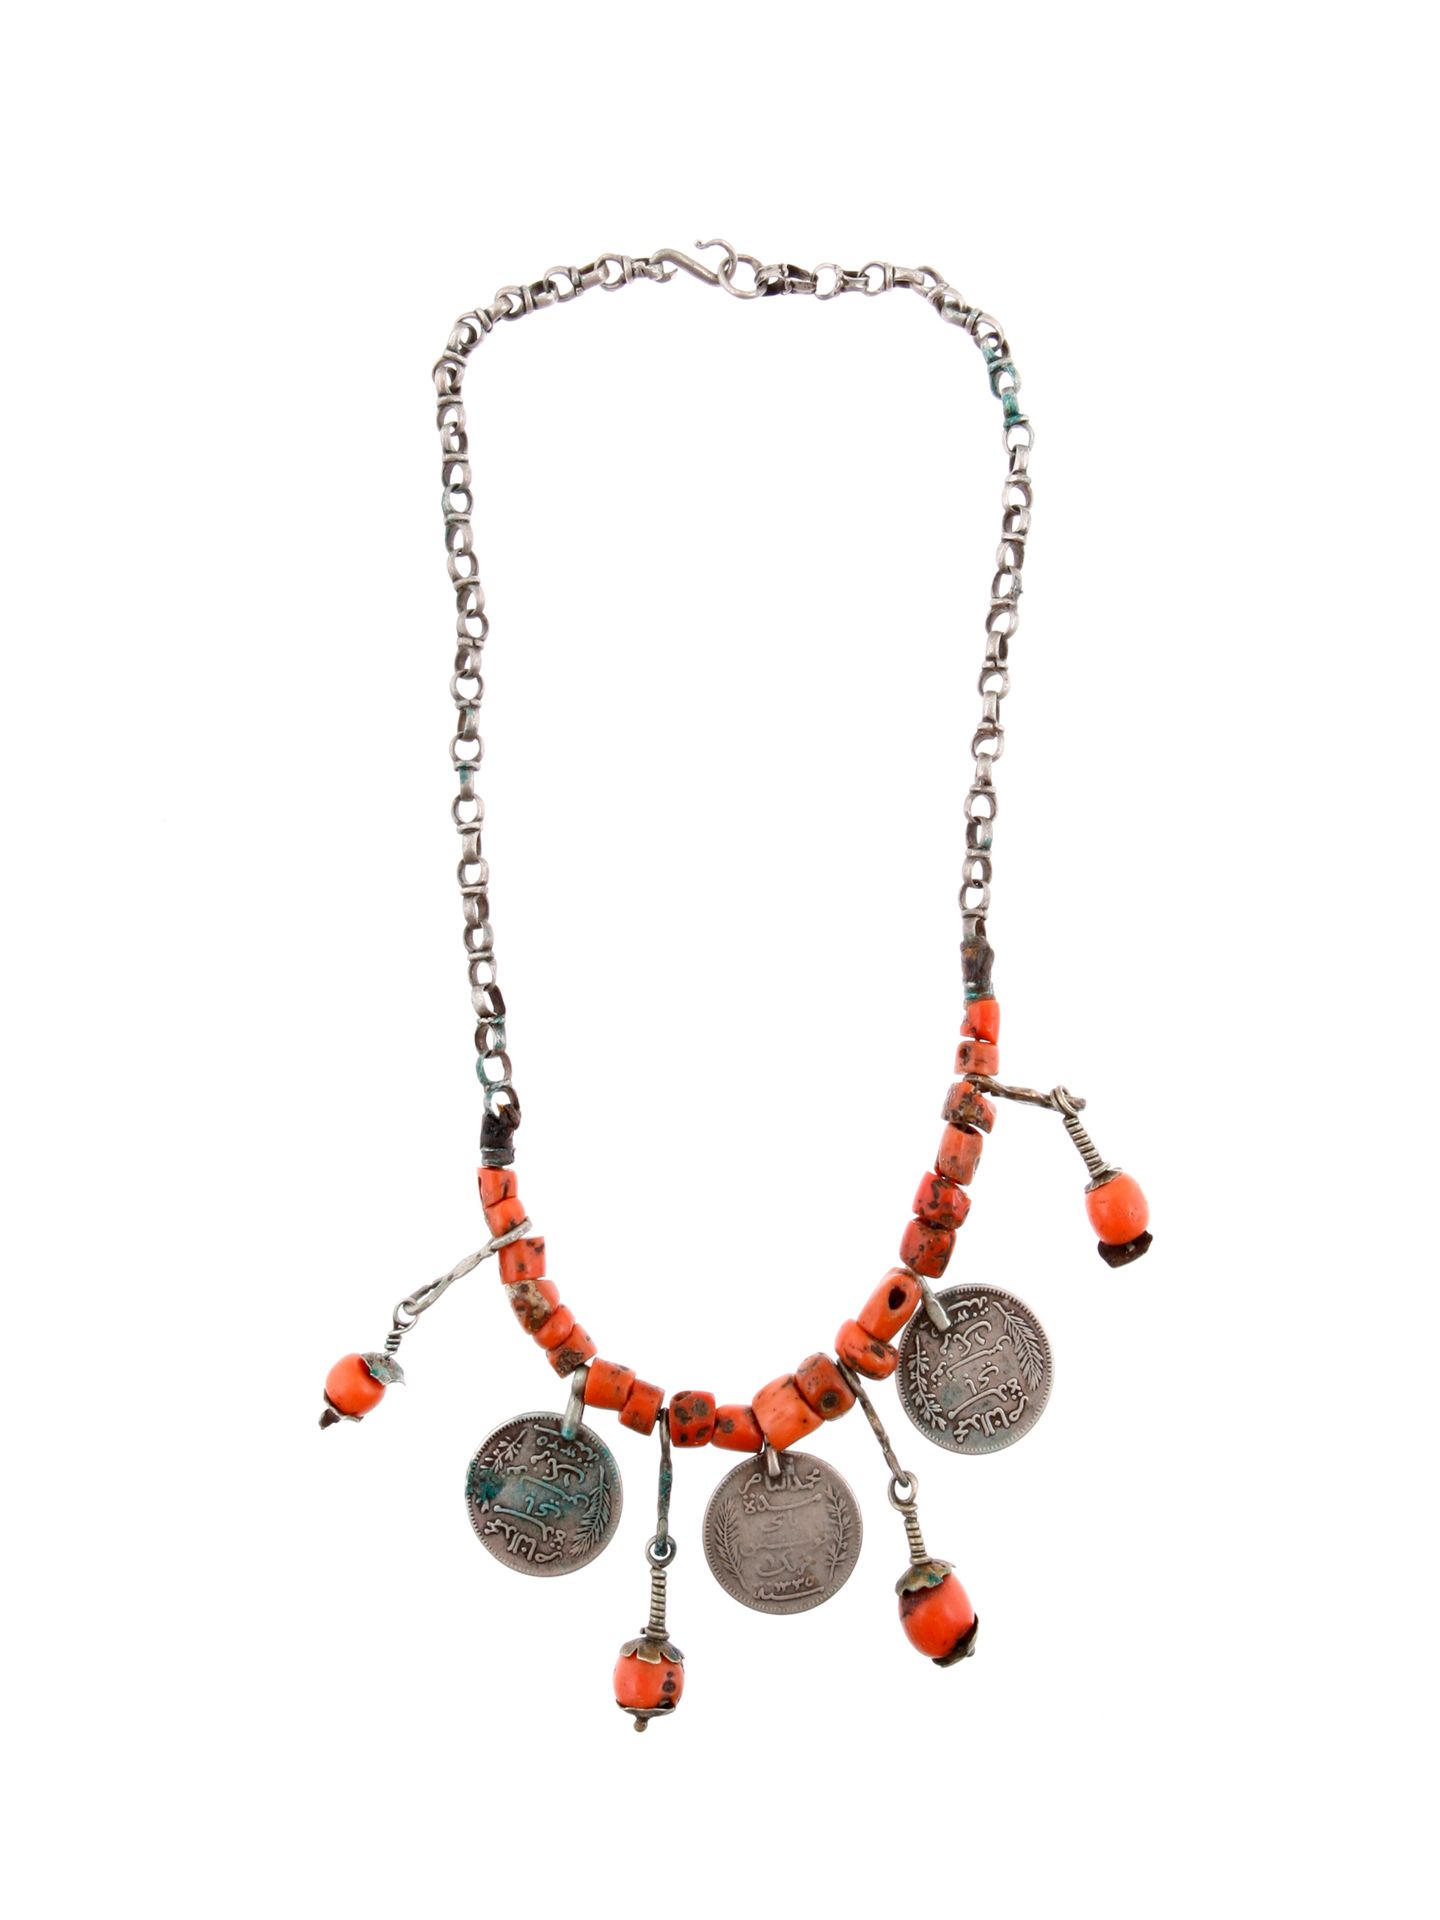 A Berber Necklace with seven Pendants Collar con siete colgantes de joyería

Ber&hellip;